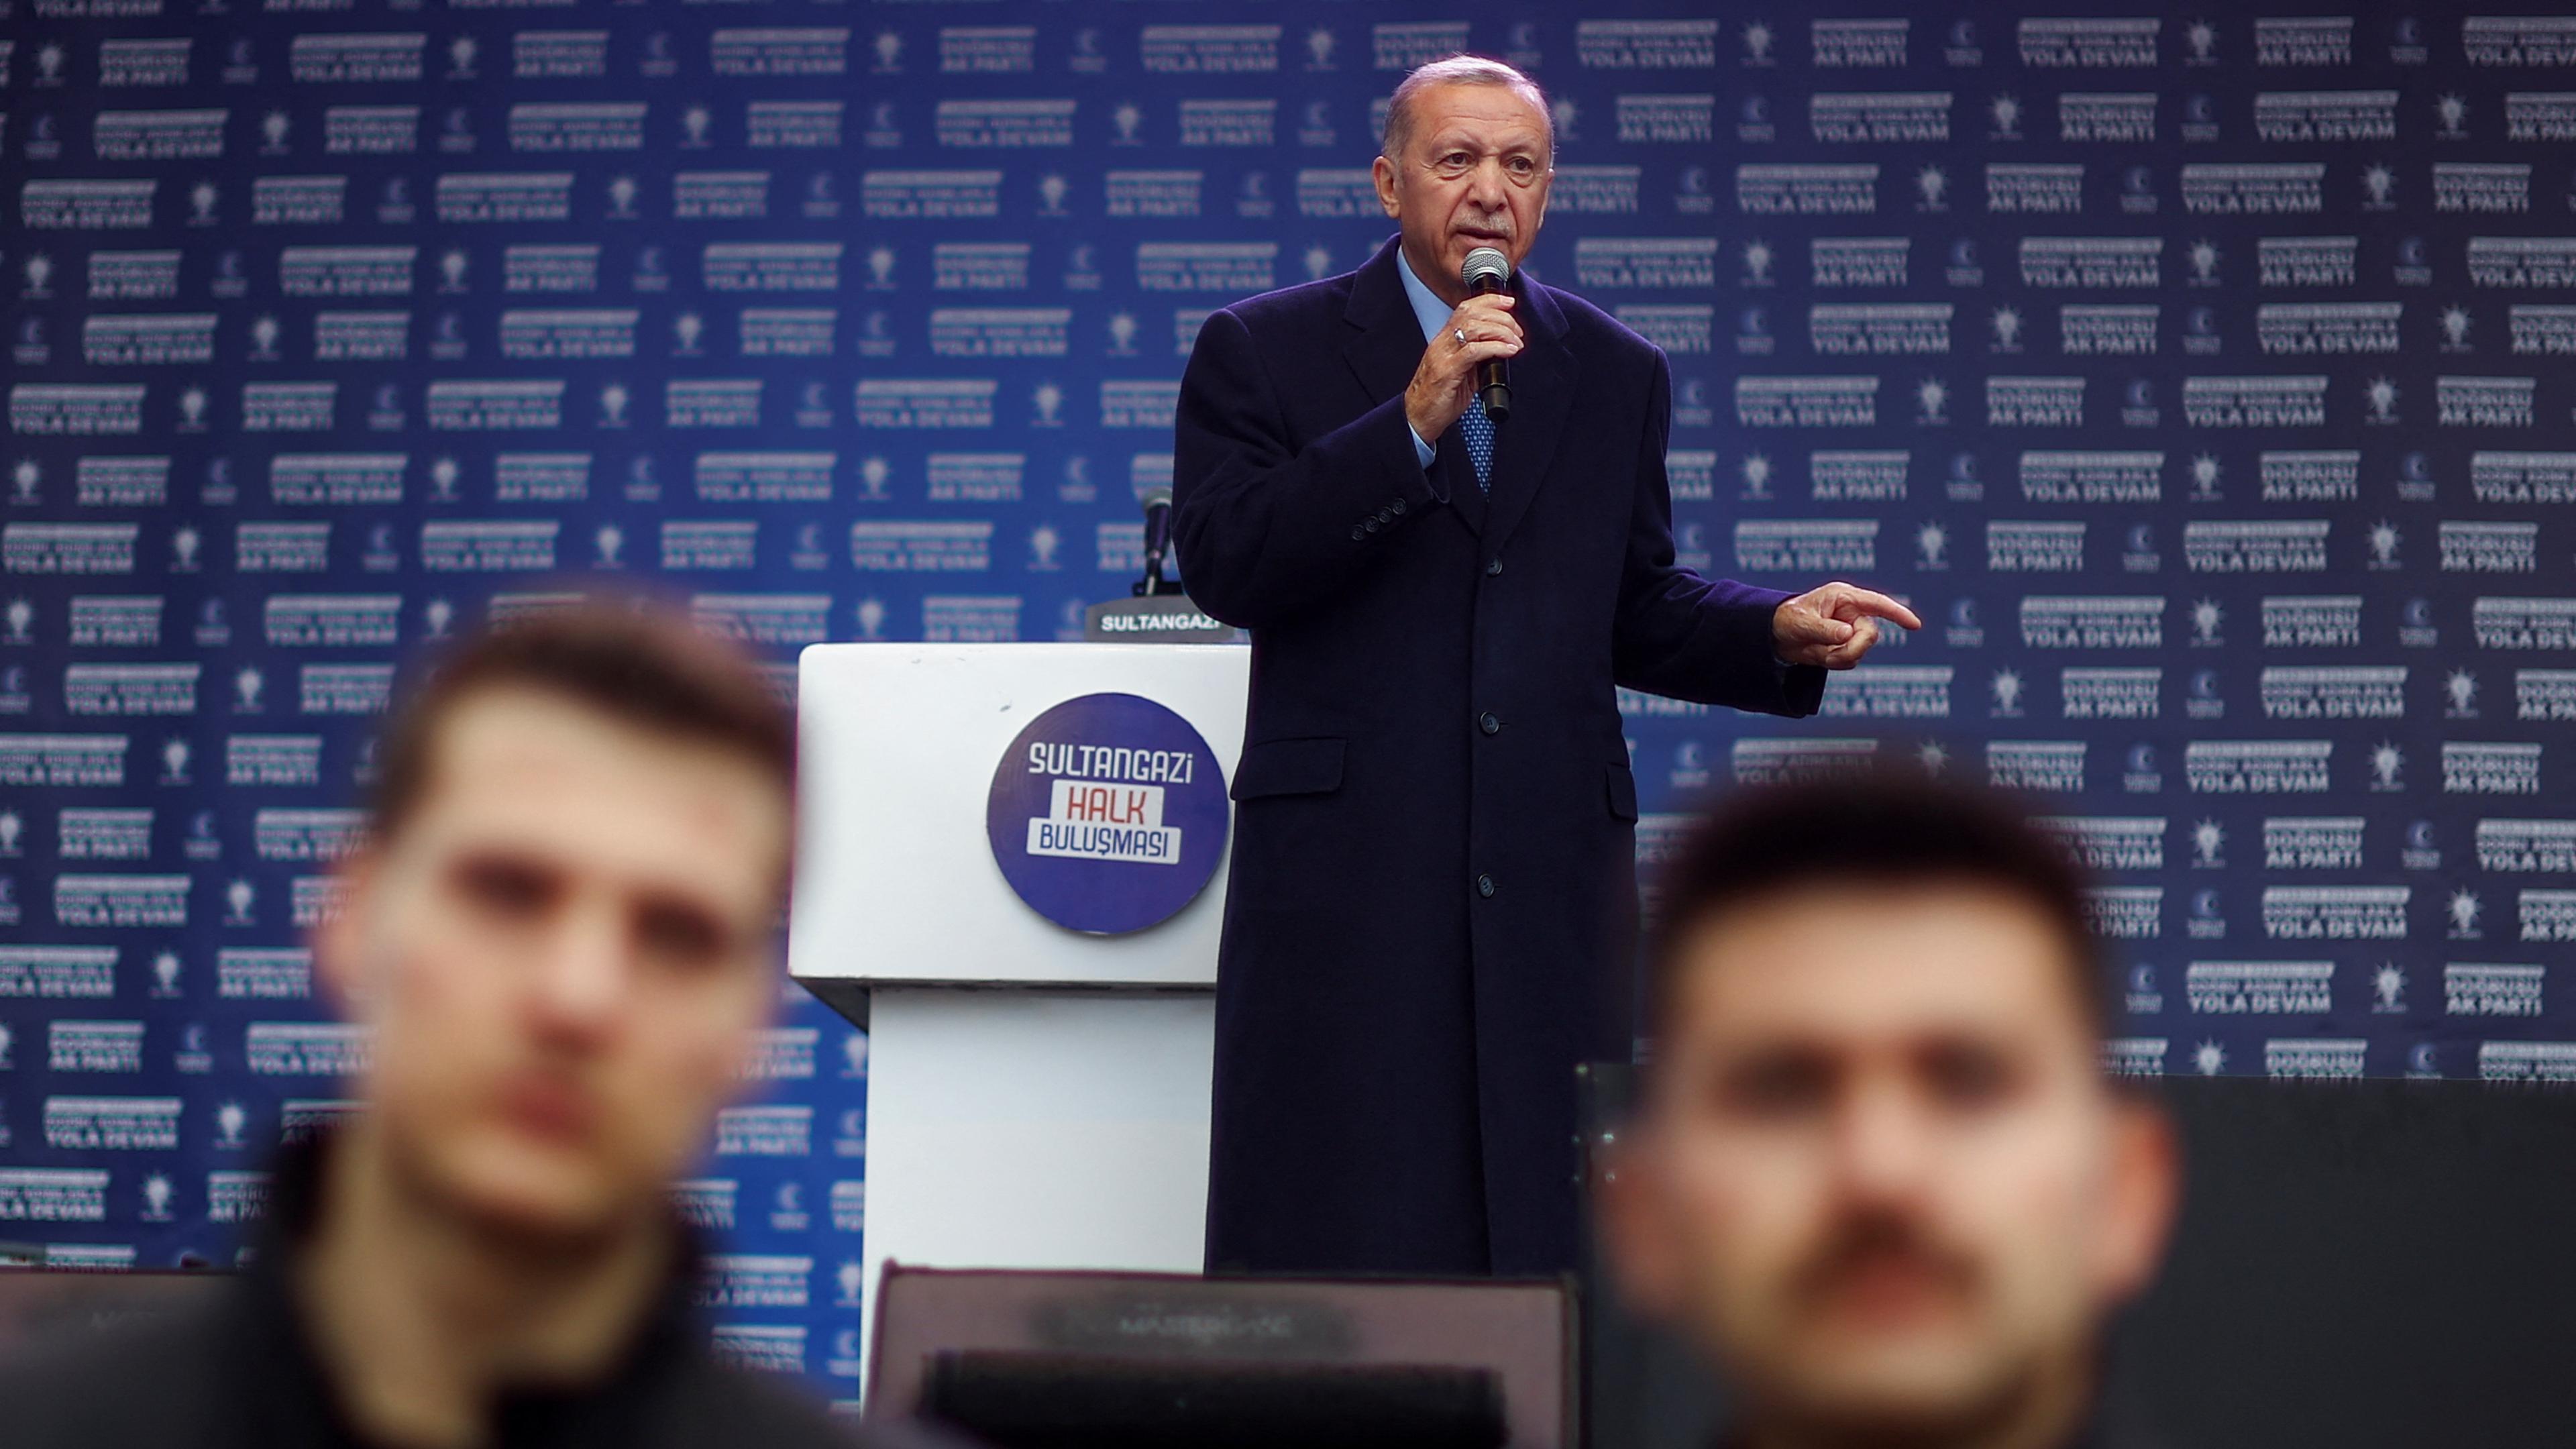 Der Türkische Präsident Erdogan spricht während einer Wahlkampfveranstaltung in Istanbul.